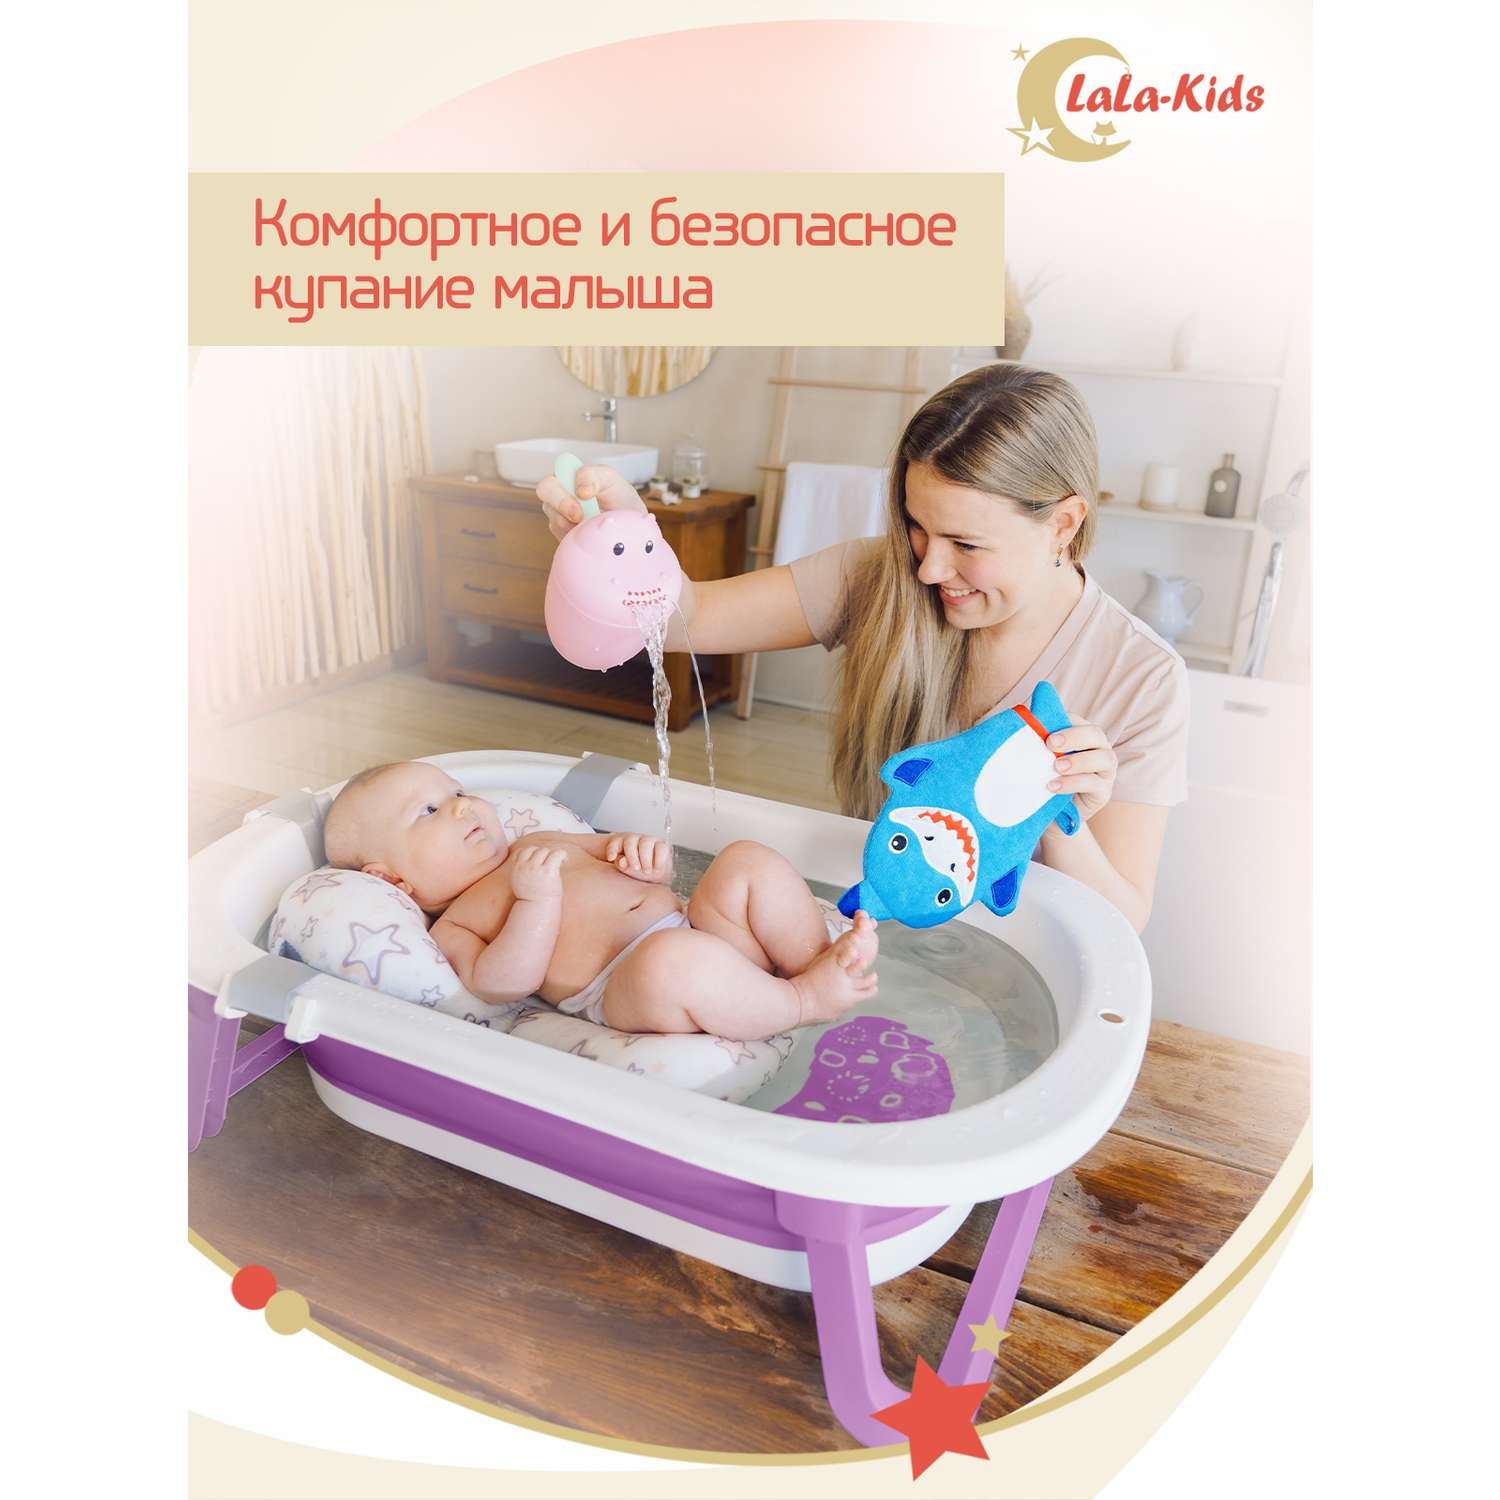 Складная ванночка LaLa-Kids для купания новорожденных с матрасиком в комплекте - фото 2